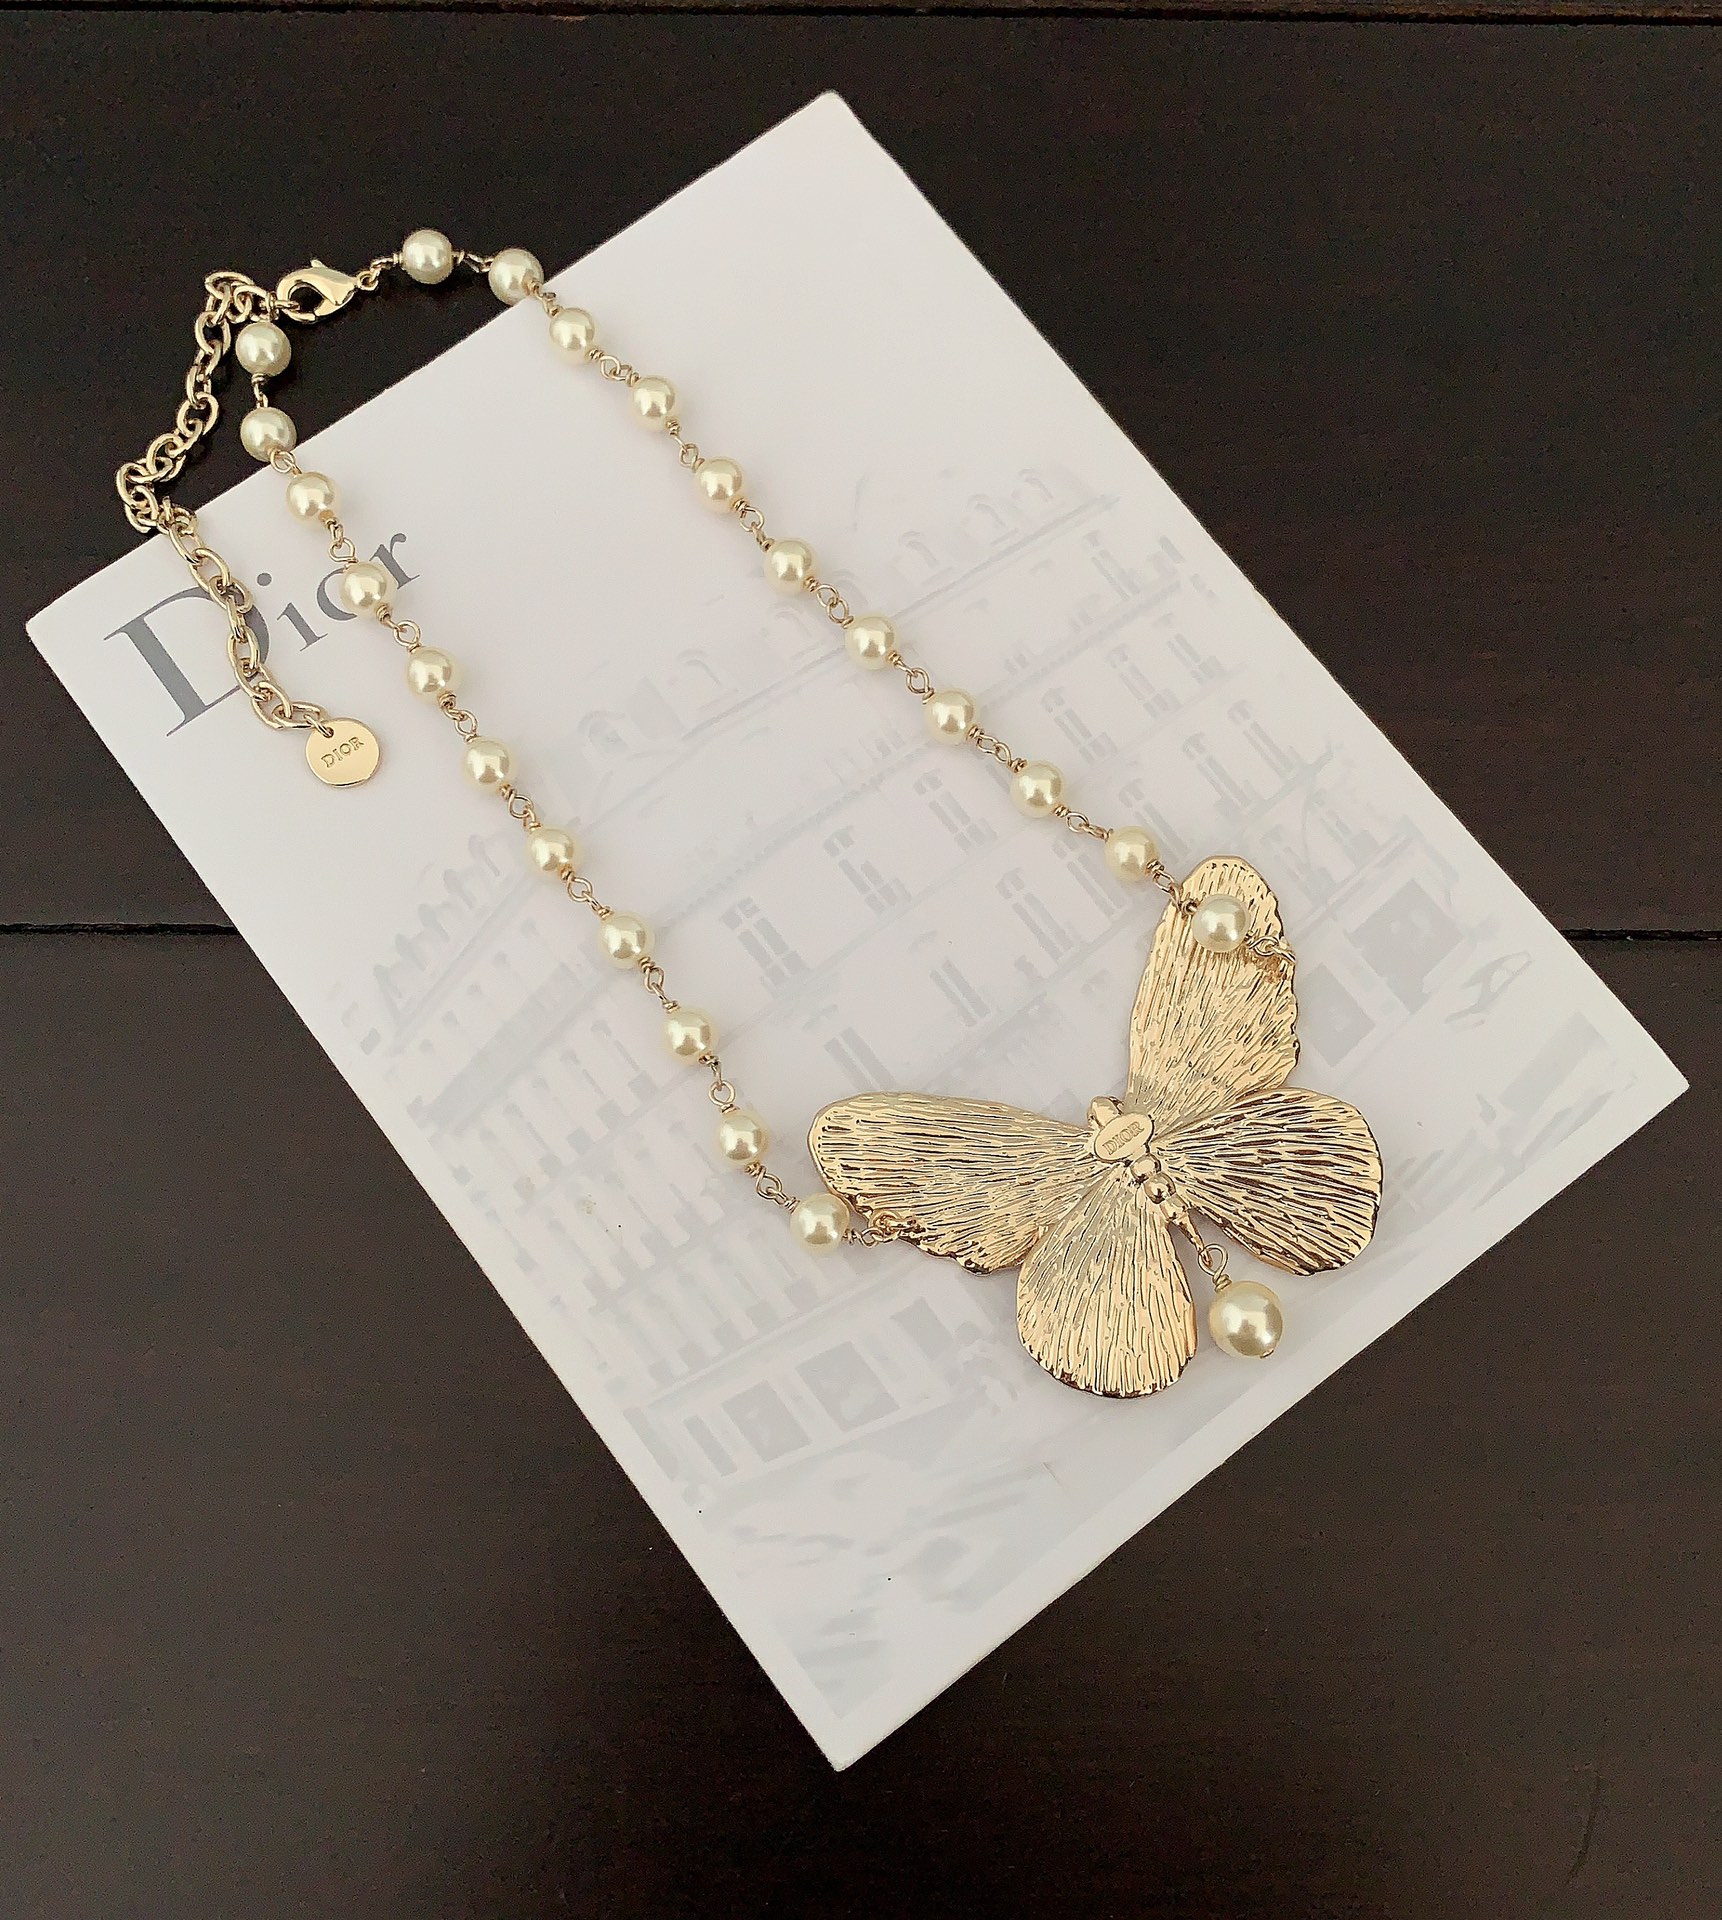 D*or最新款蝴蝶珍珠项链一致官网黄铜材质